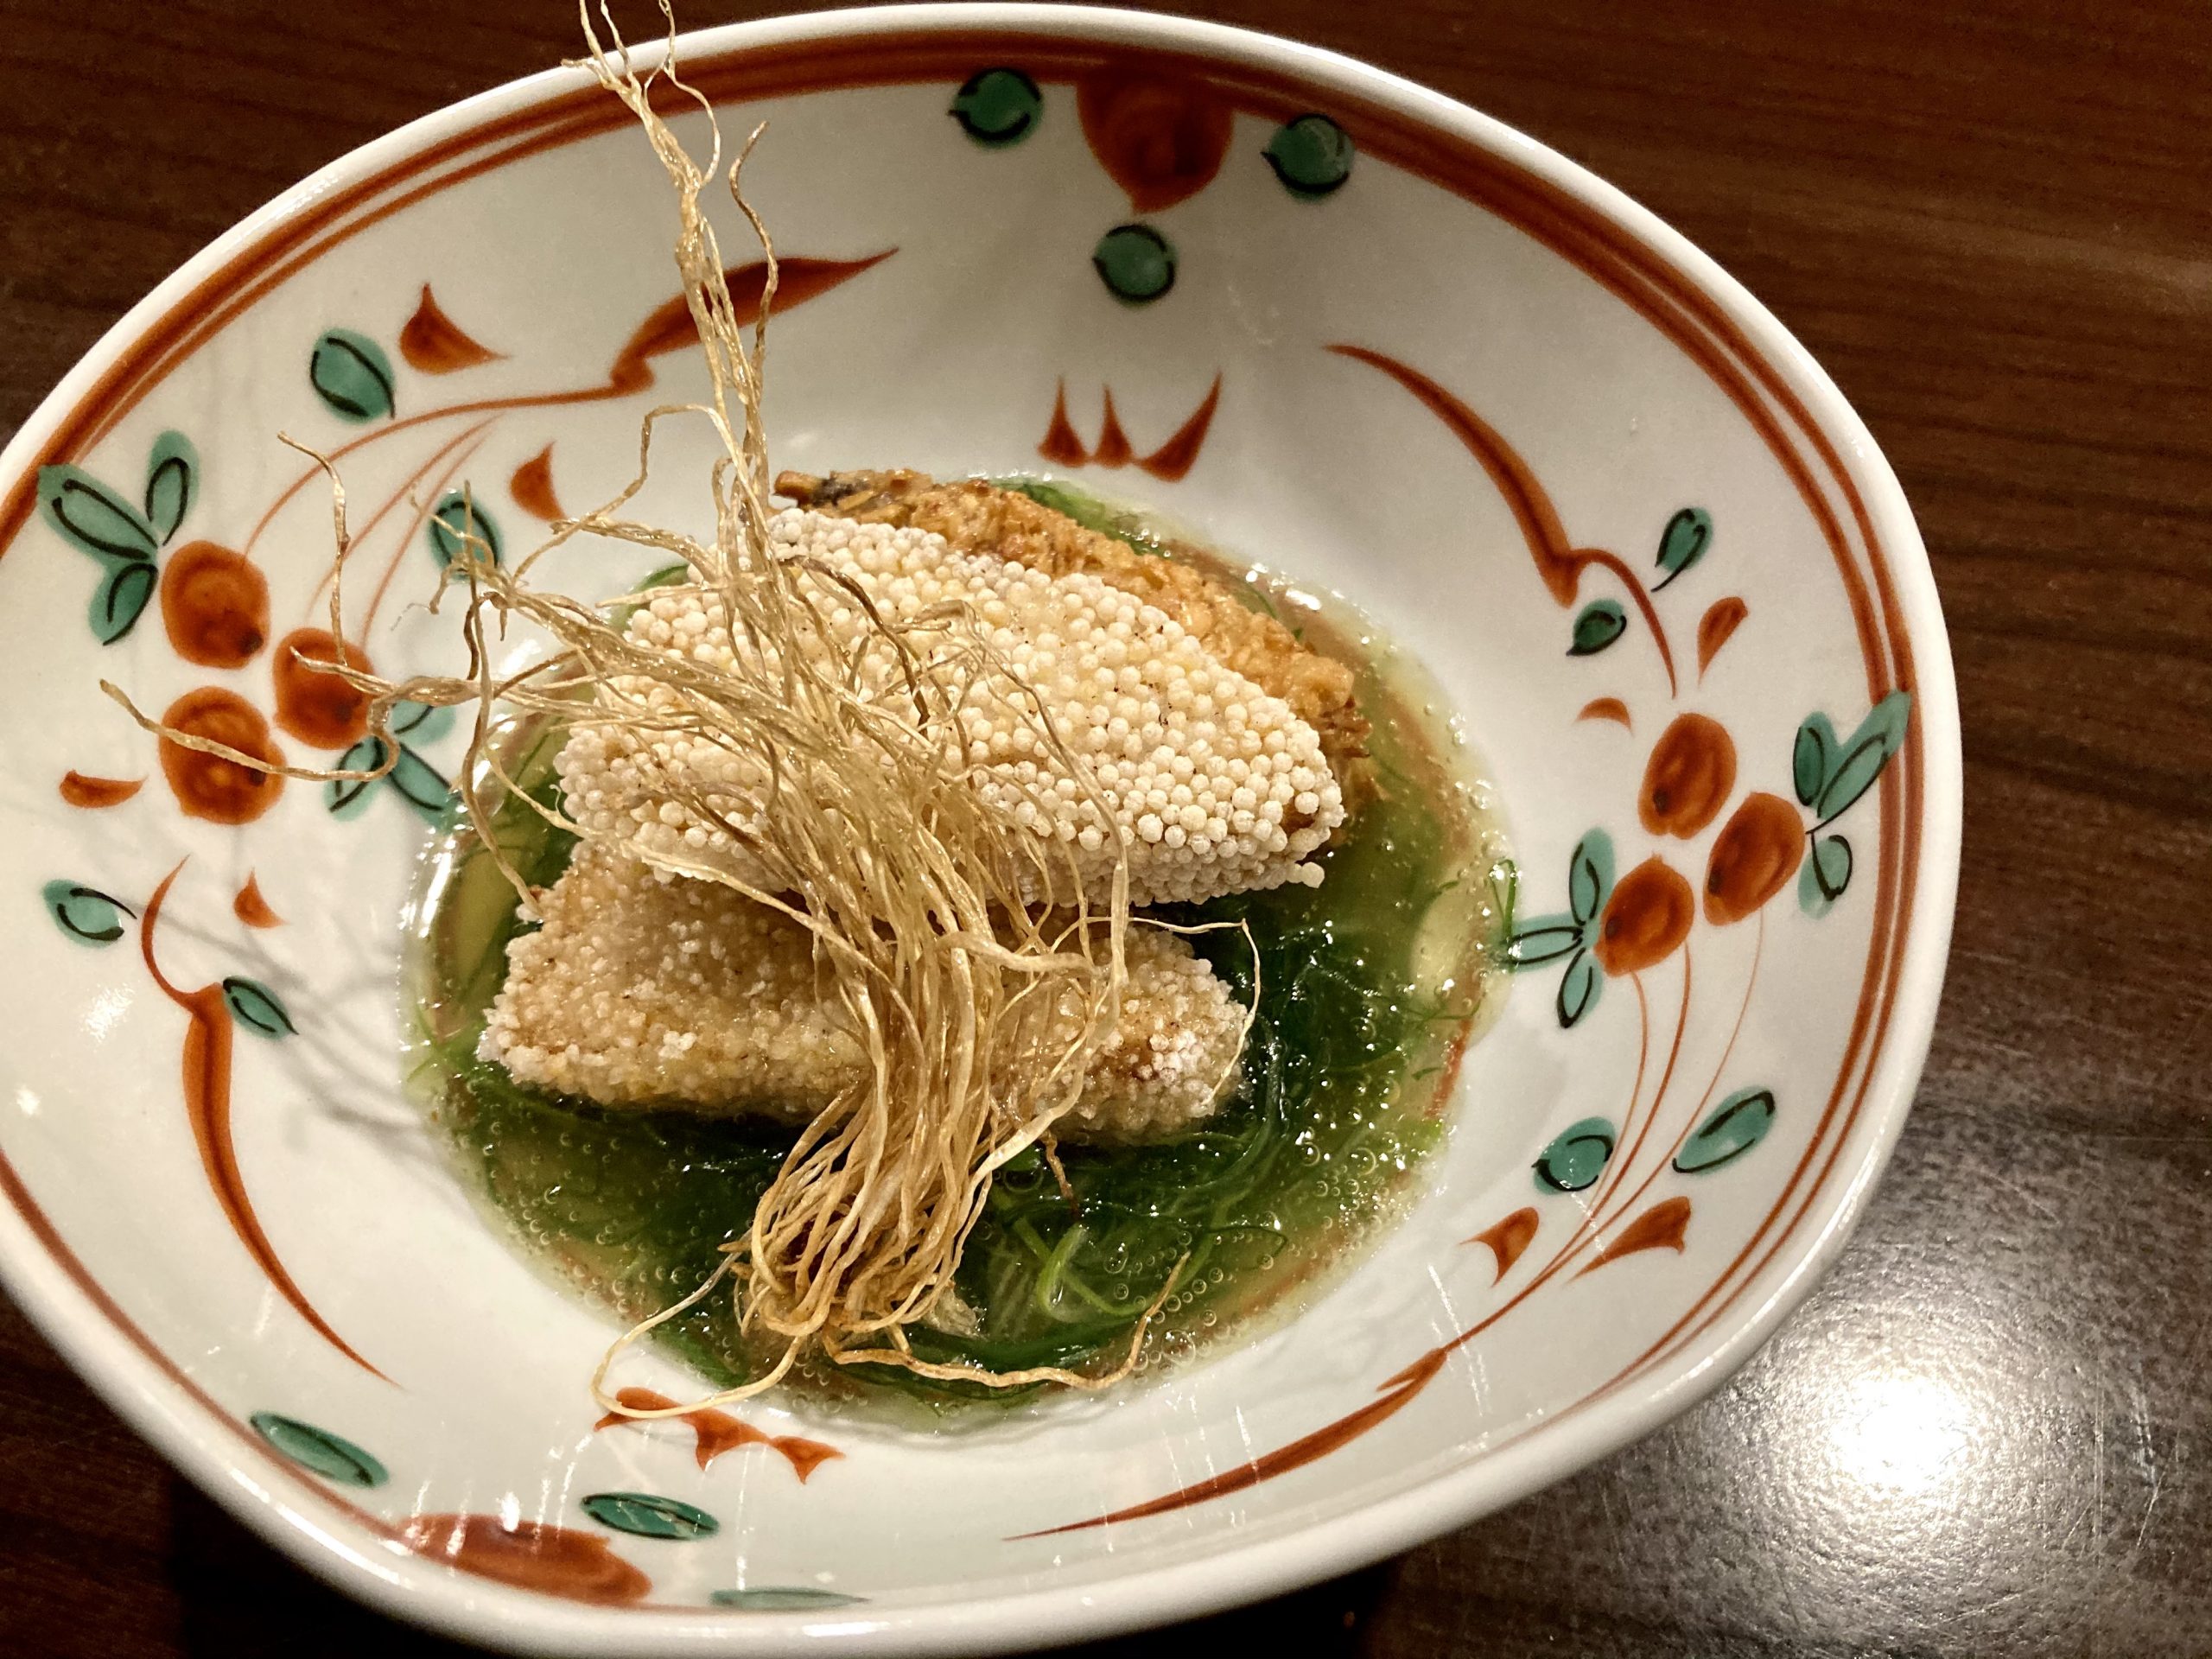 ヒラマサ三色揚げ葱飴ソース 海の恵み 食の底力 Japan 公式レシピサイト